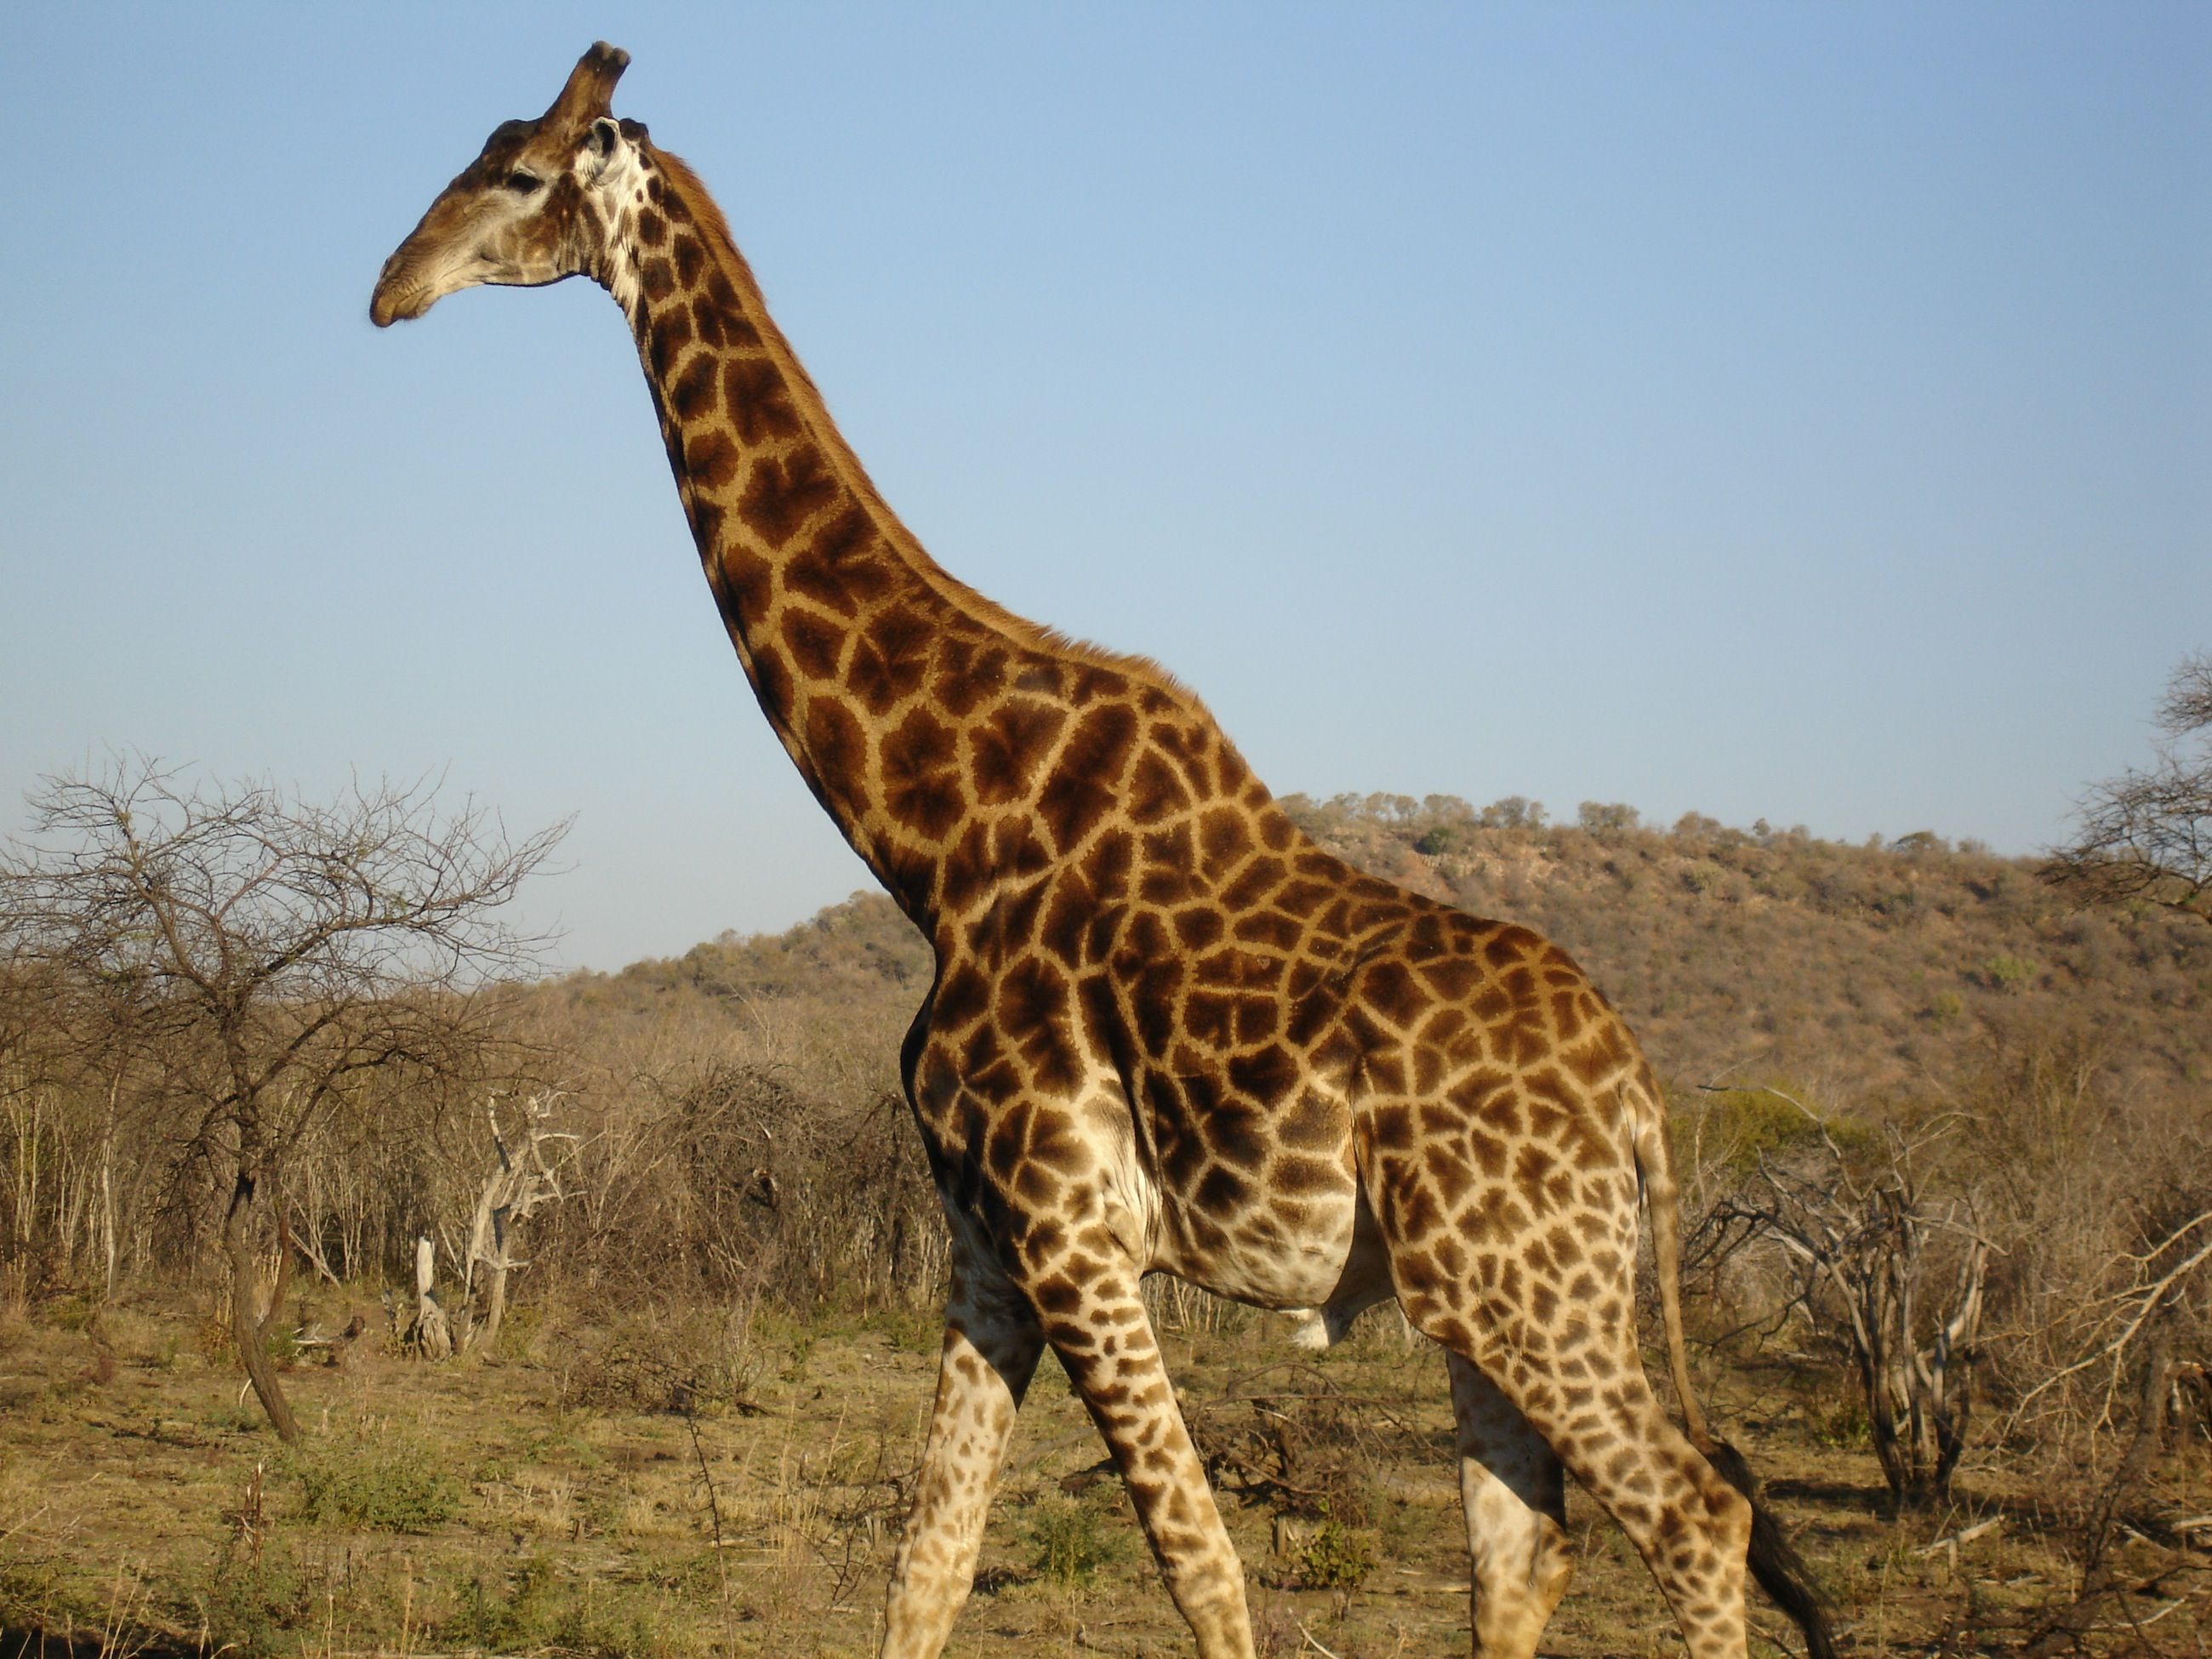 Girafa sul africana